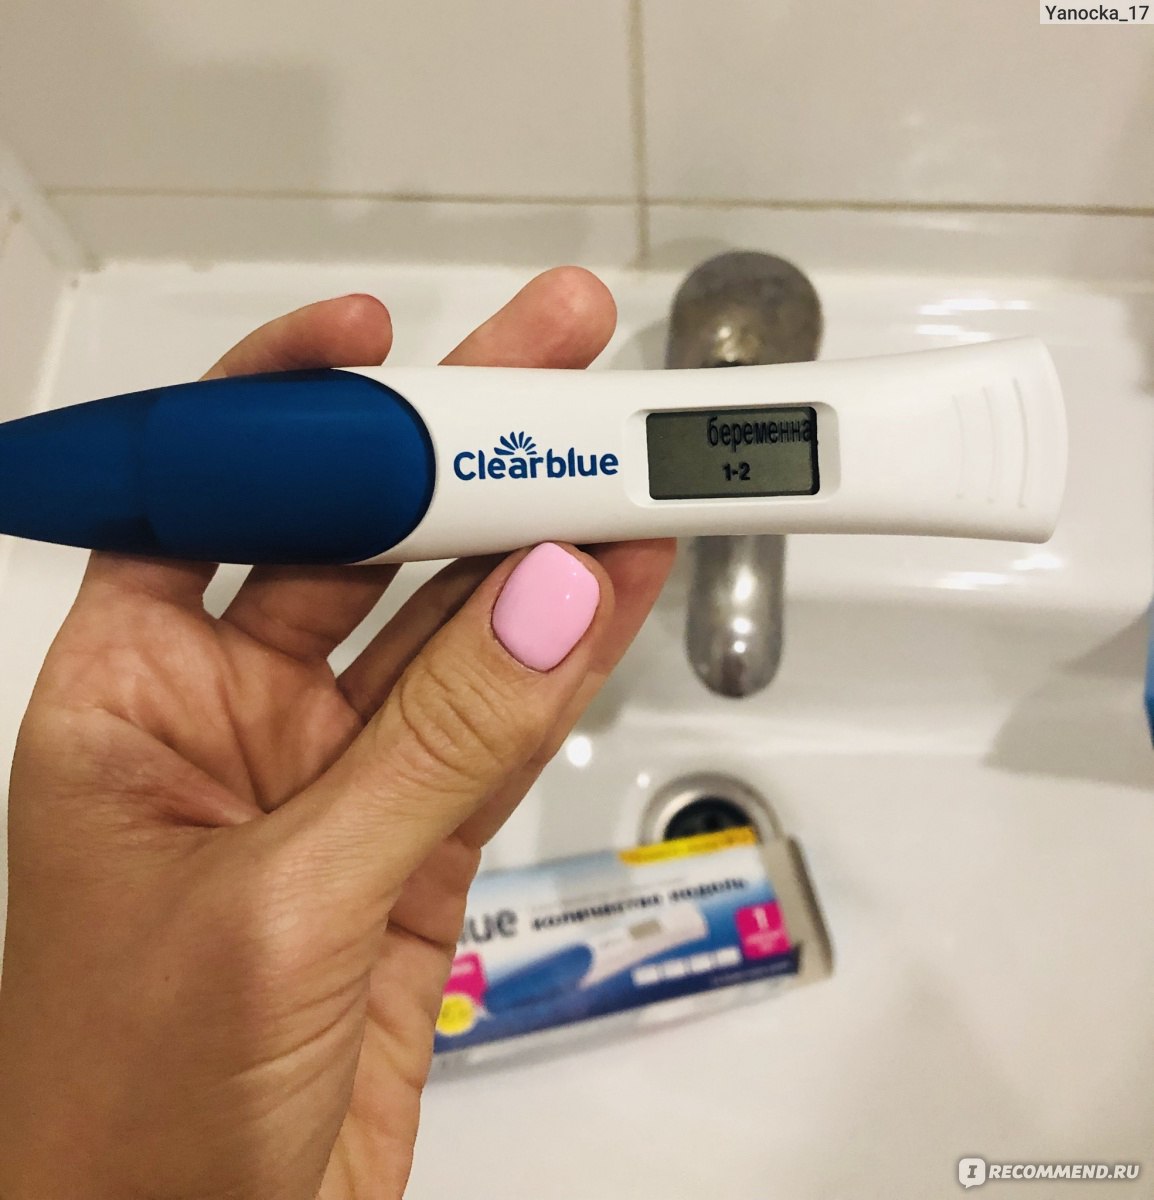 Когда покажет электронный тест. Цифровой тест на беременность Clearblue. Цифровой тест Clearblue. Беременный тест Clearblue цифровой. Цифровой тест Clearblue с индикатором срока.